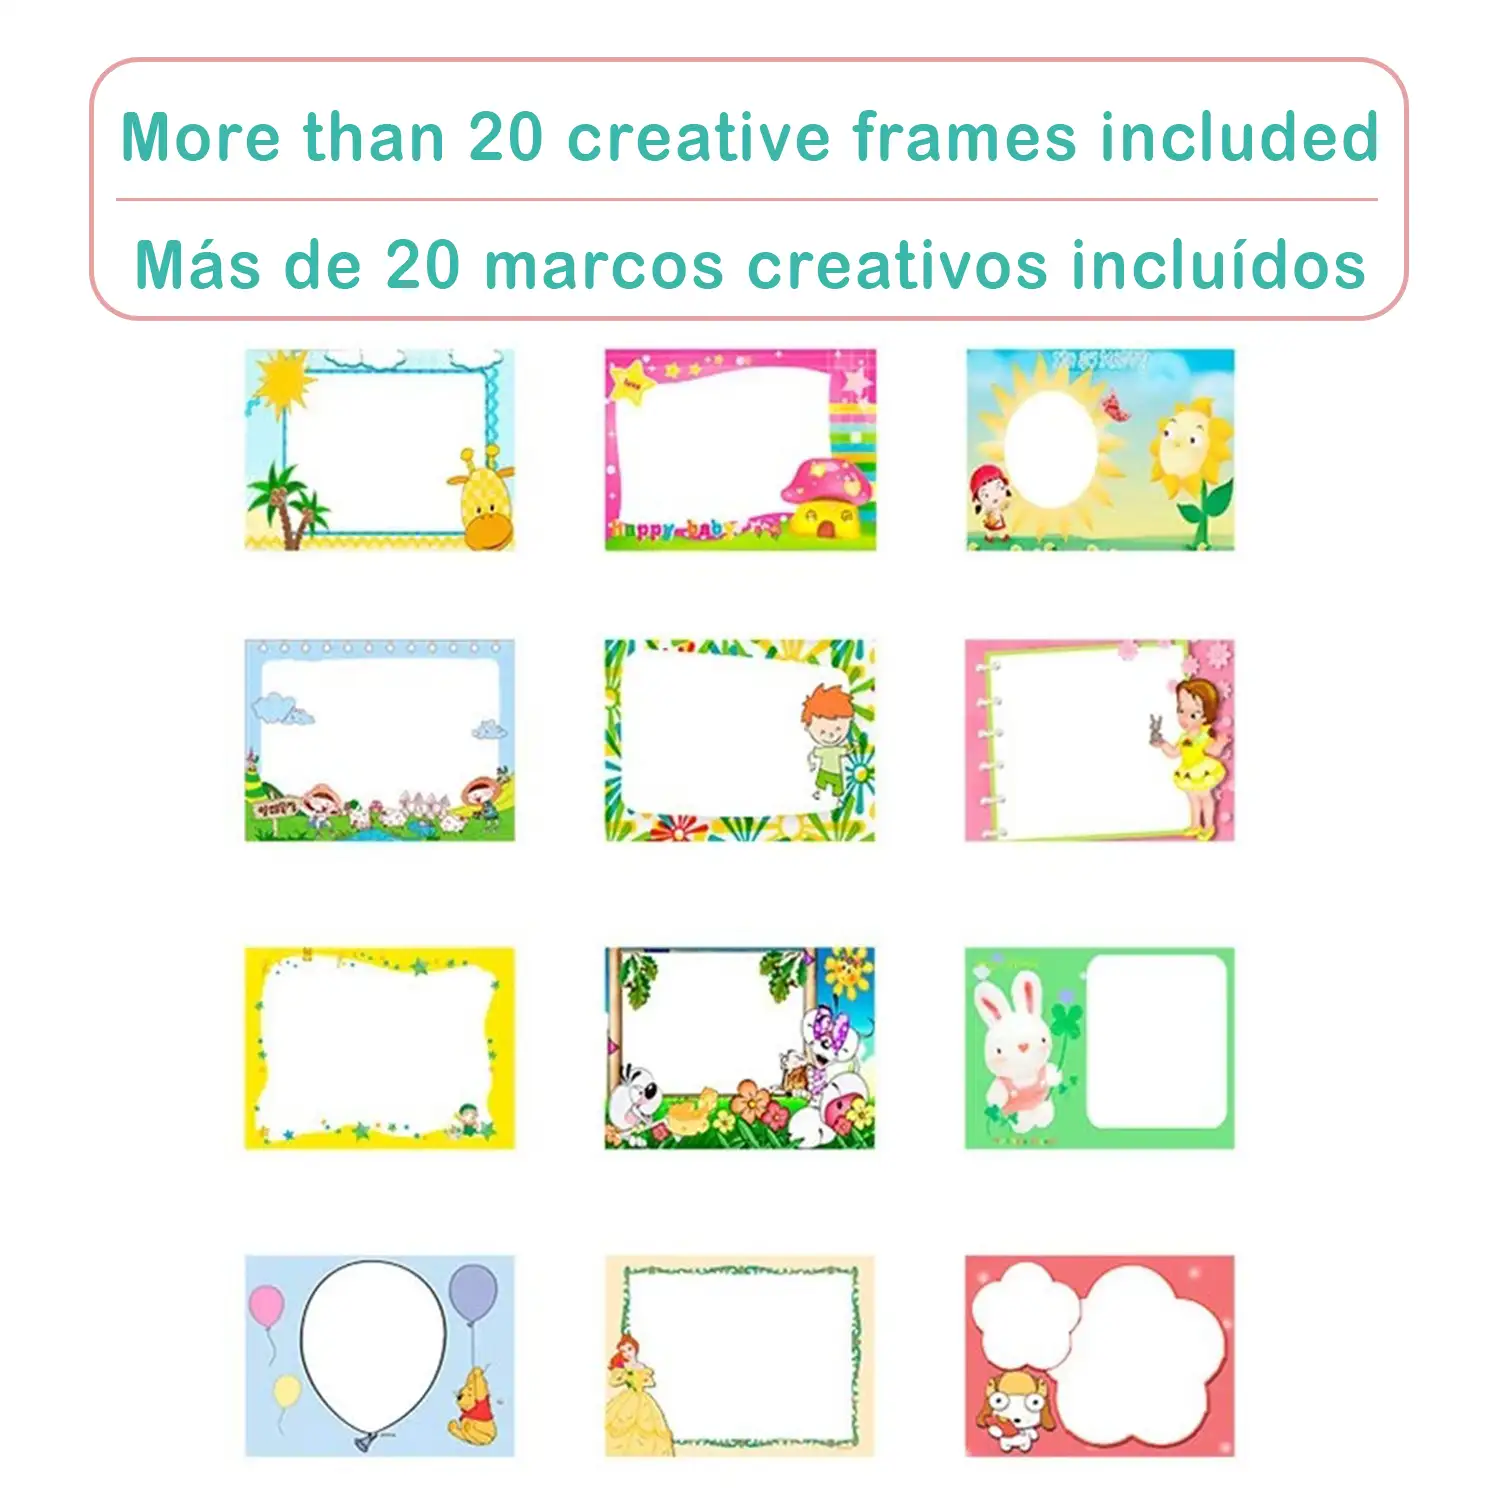 Cámara de fotos y videos para niños diseño pajarito. Full HD1080 y 12 megapíxeles